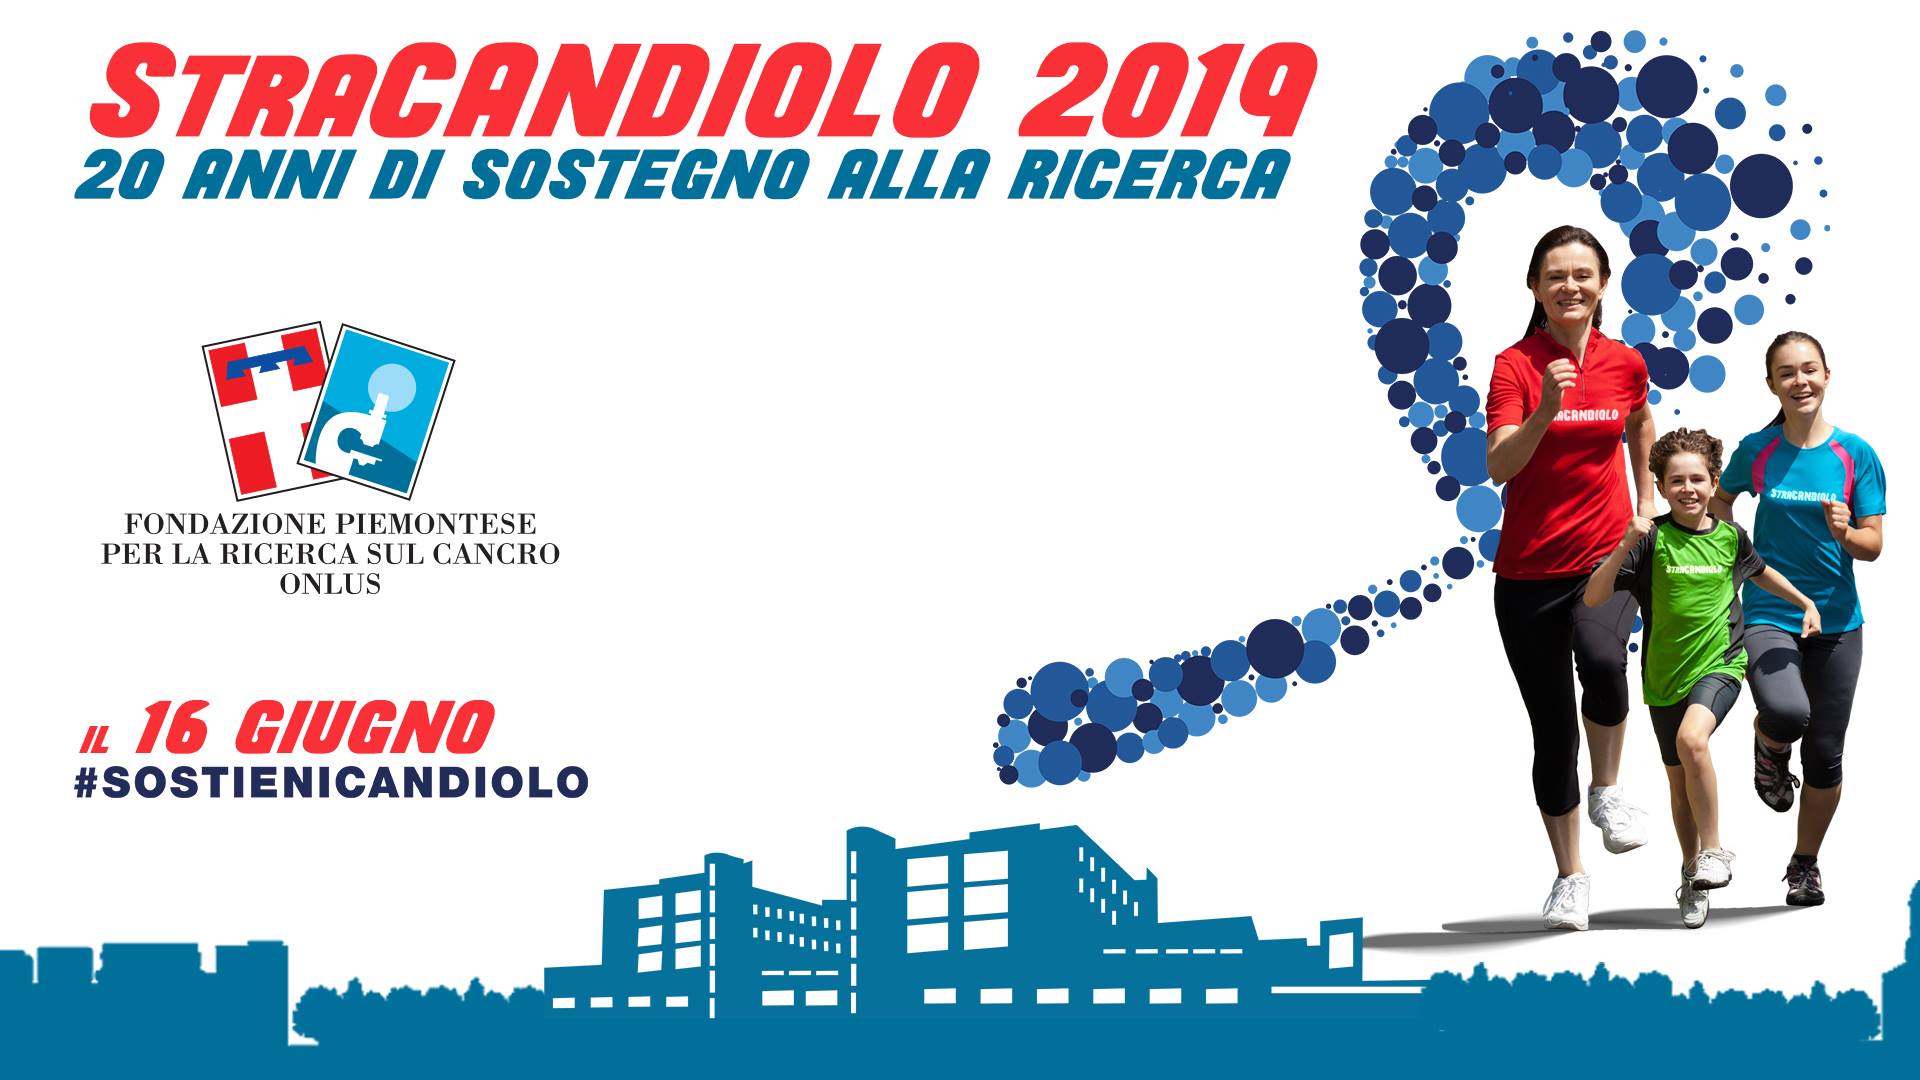 StraCandiolo 2019